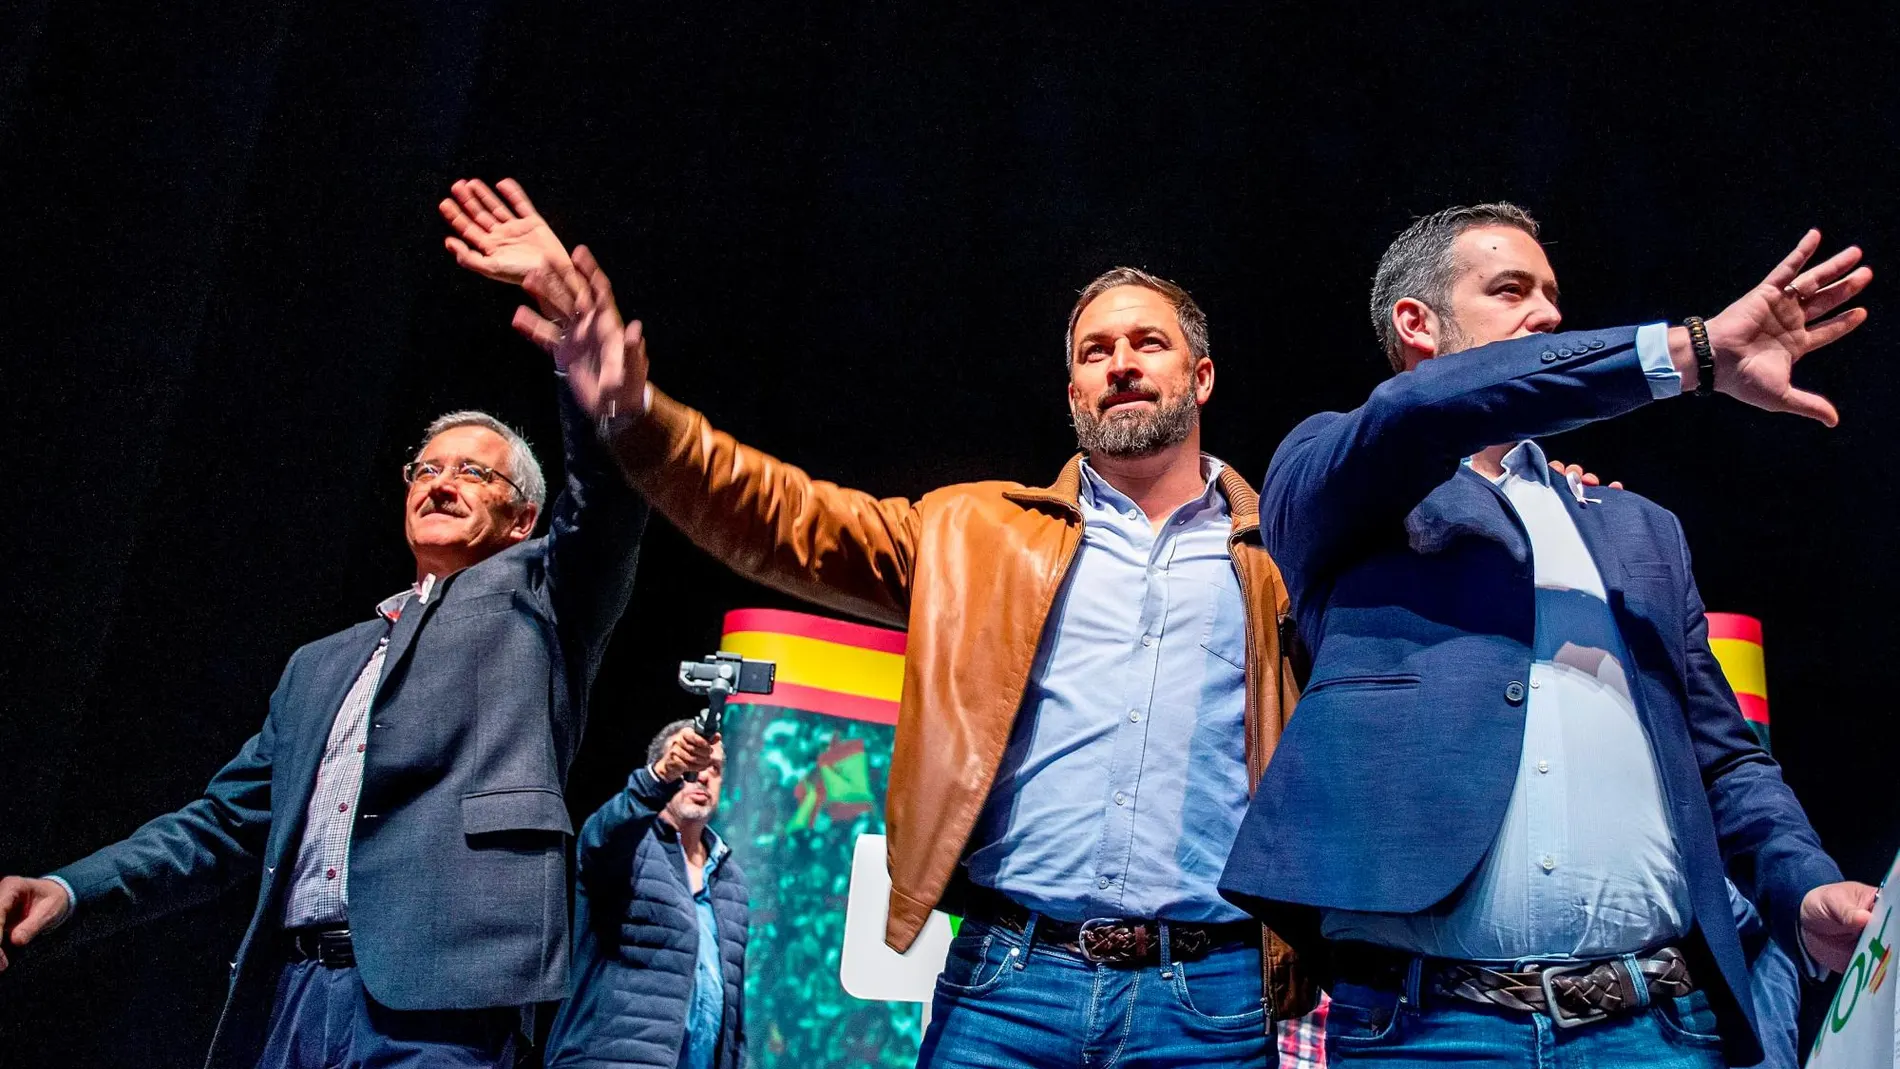 El presidente de Vox, Santiago Abascal, junto a Ortega Lara y el candidato por Burgos al Congreso, Javier Martínez, participan en el acto público en Burgos